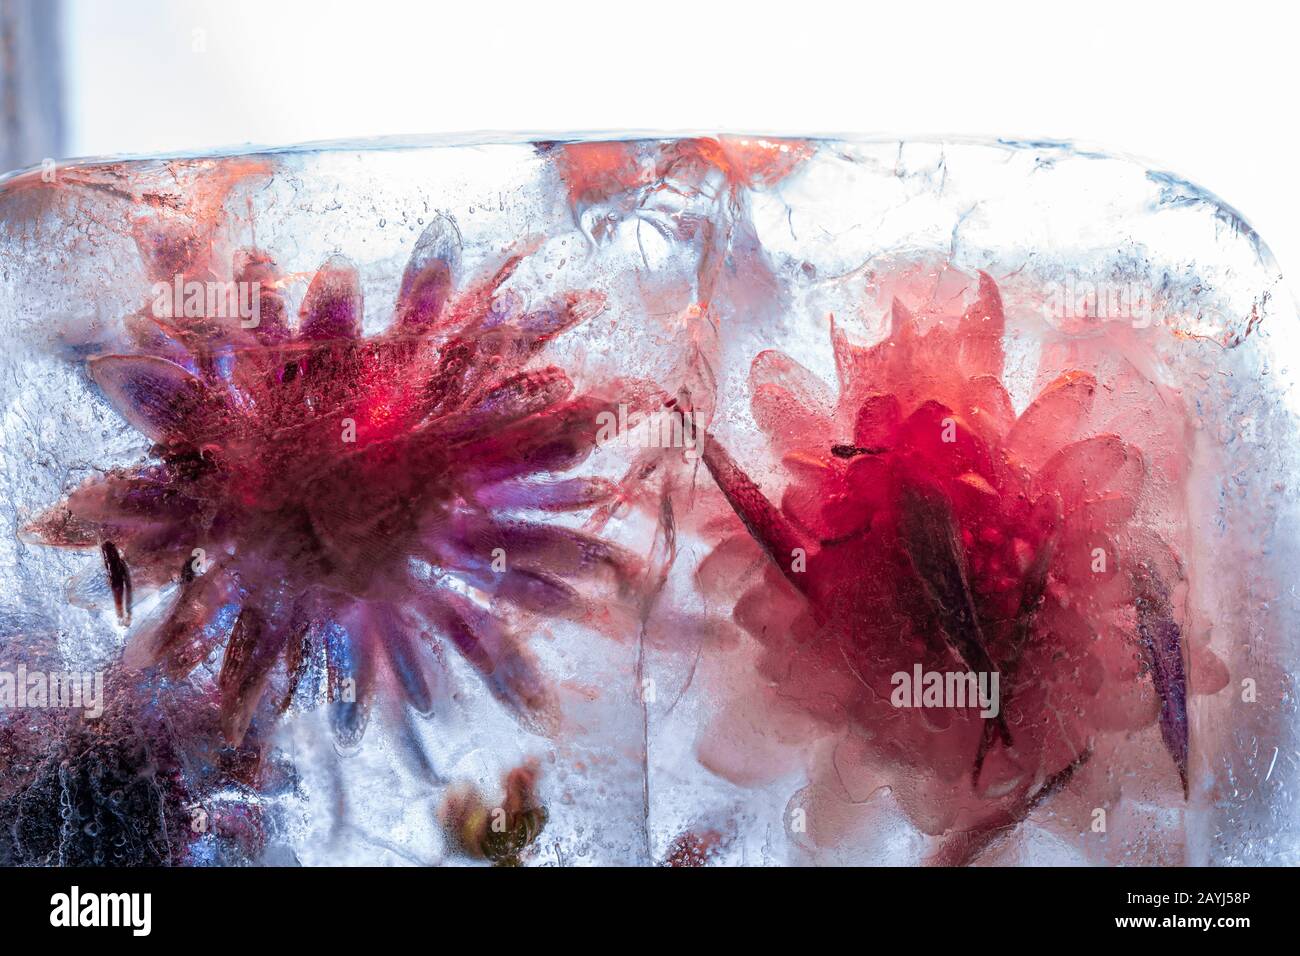 Gefrorene rote Blumen in dickem blauen Eisblock mit gerissener Oberfläche - Makroaufnahmen mit hoher Tonhöhe Stockfoto